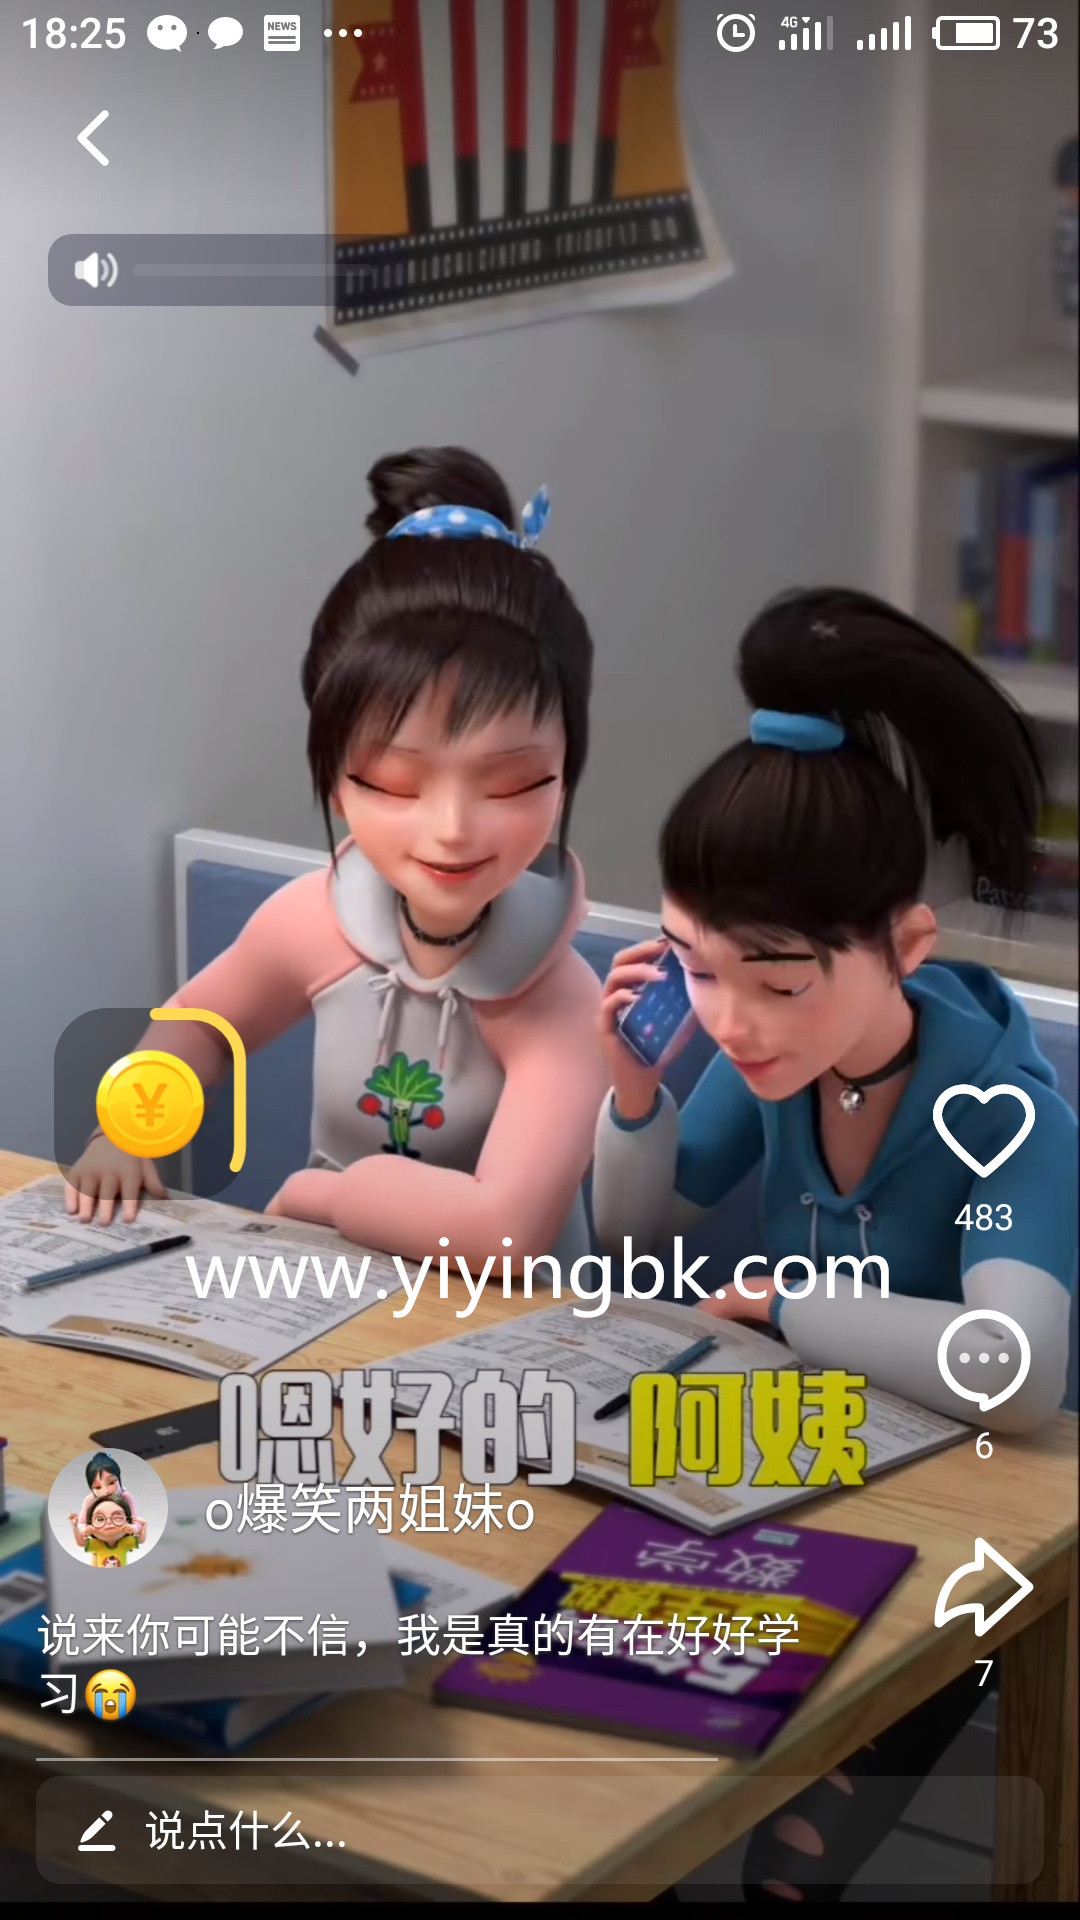 看视频领红包赚零花钱，直接提现微信和支付宝，快速到账。www.yiyingbk.com